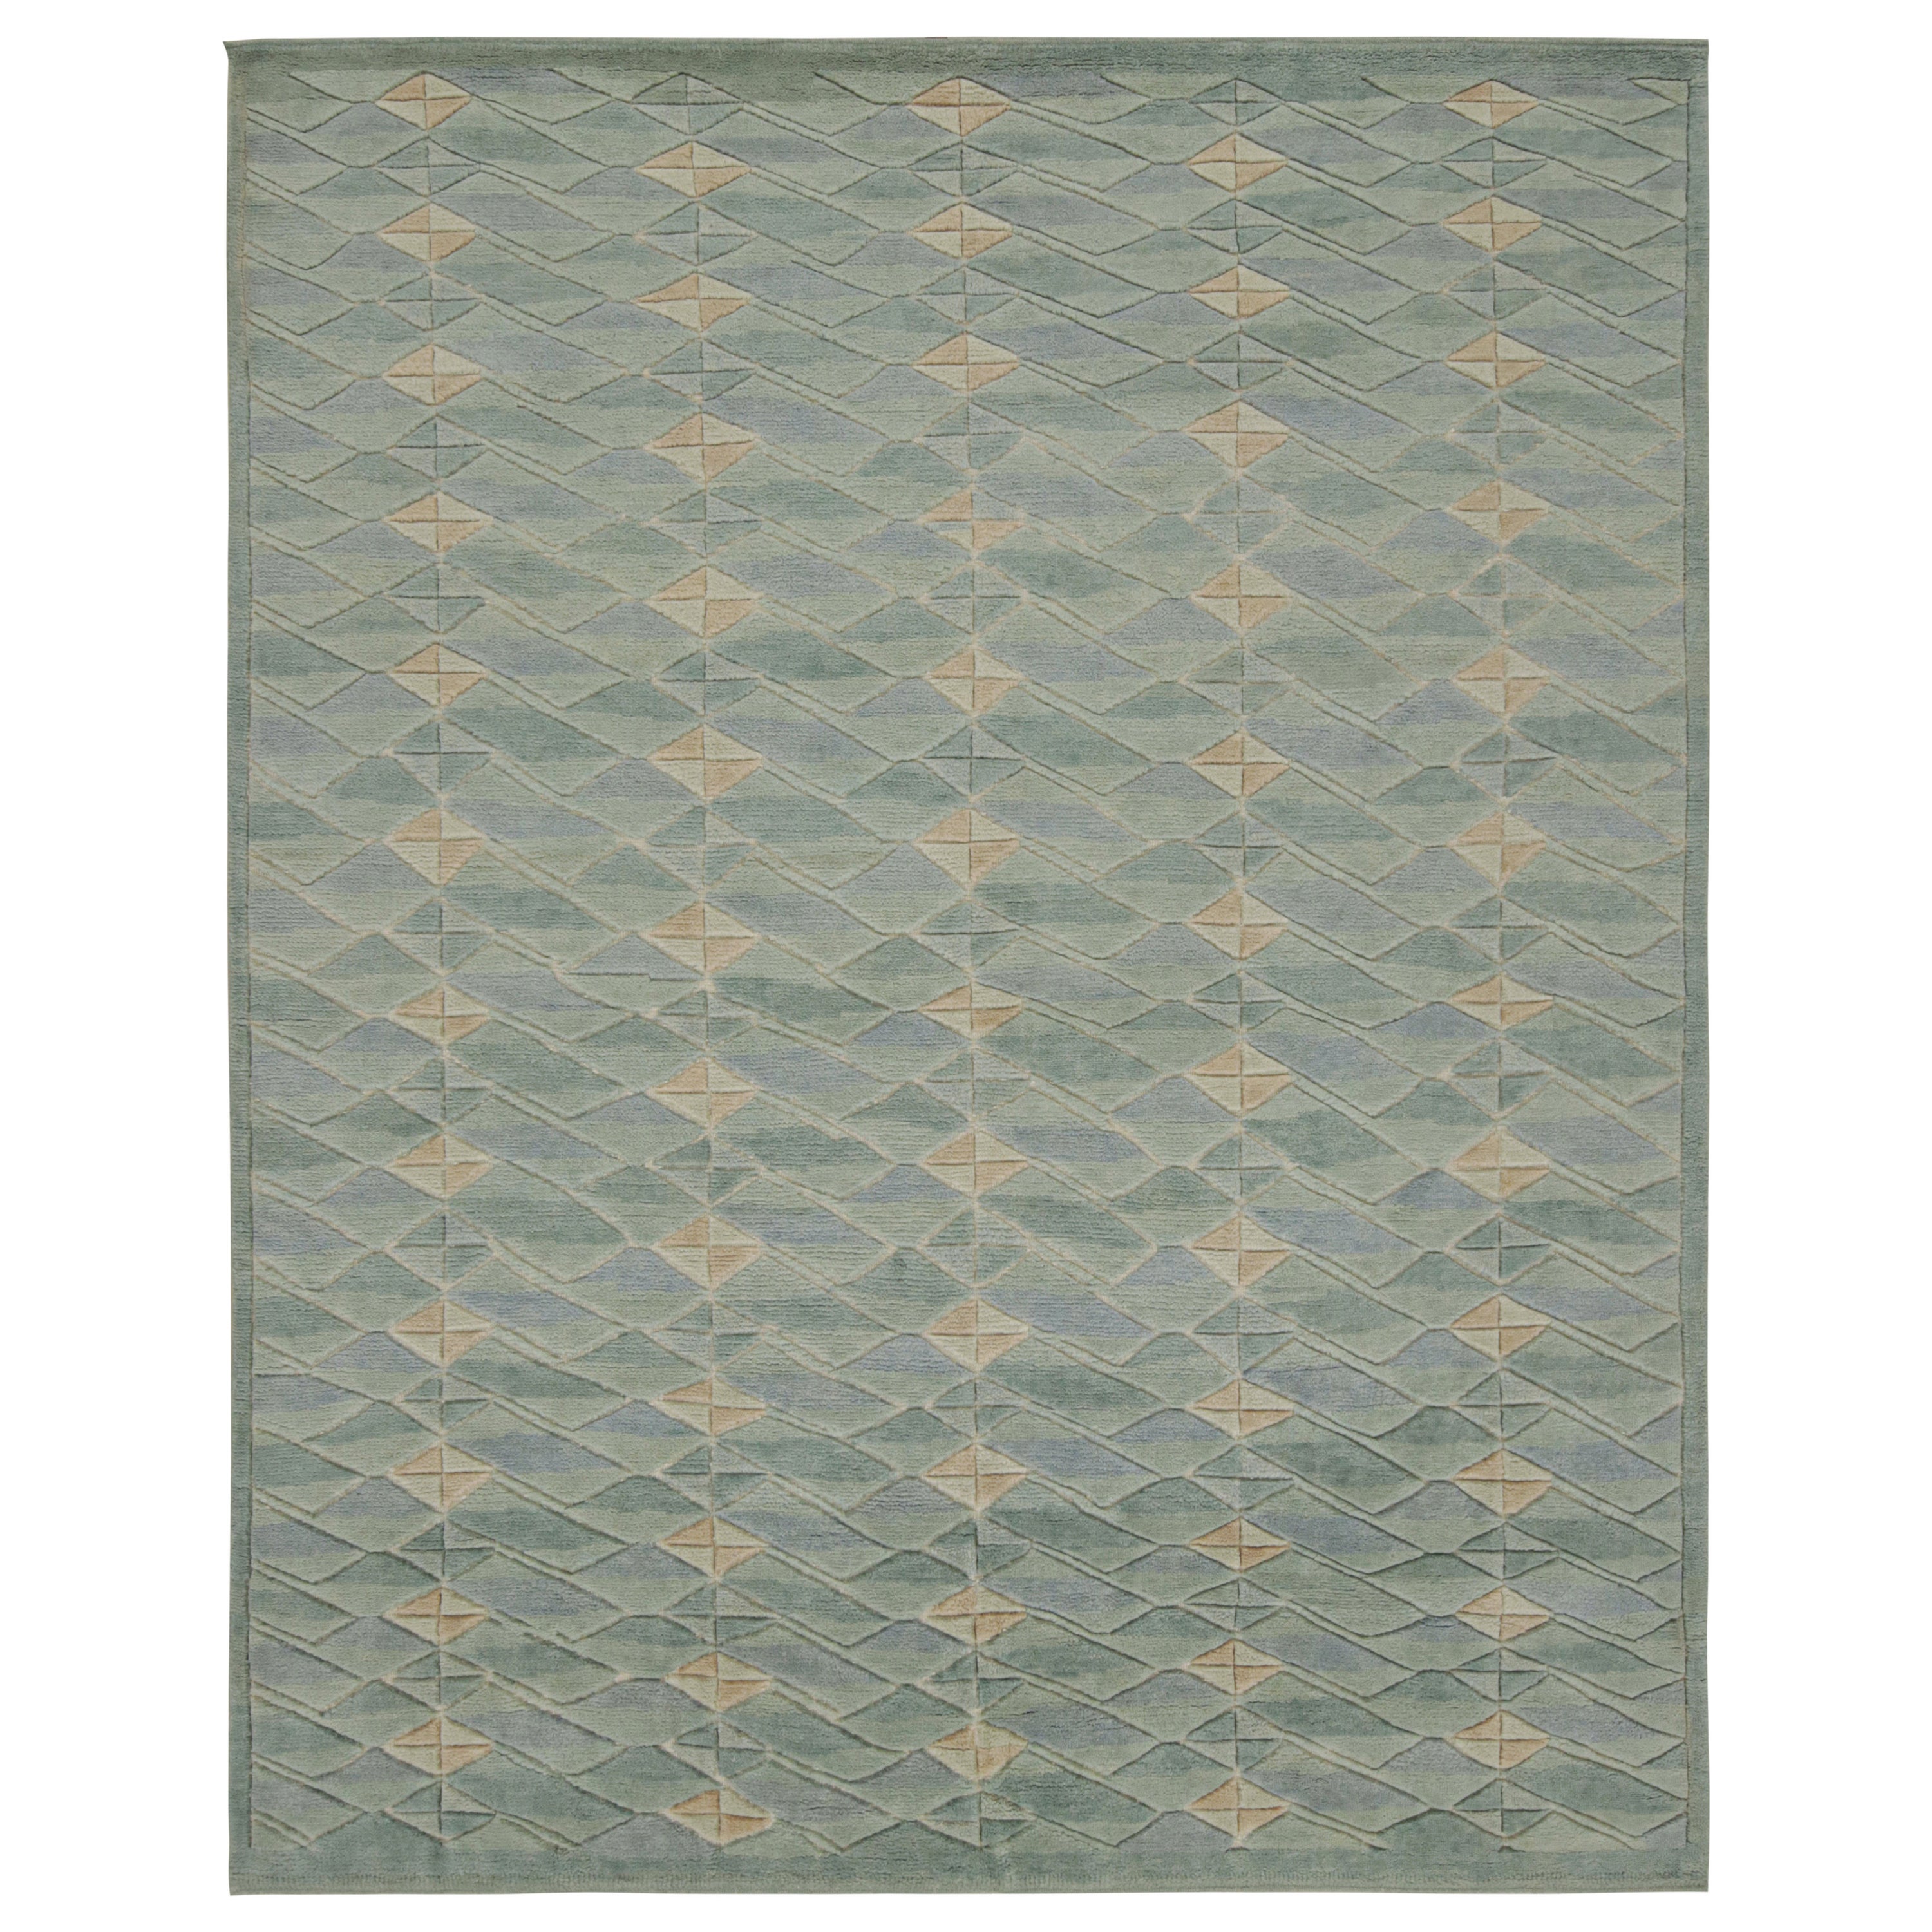 Rug & Kilim's Teppich im skandinavischen Stil in blaugrün und grün mit geometrischen Mustern